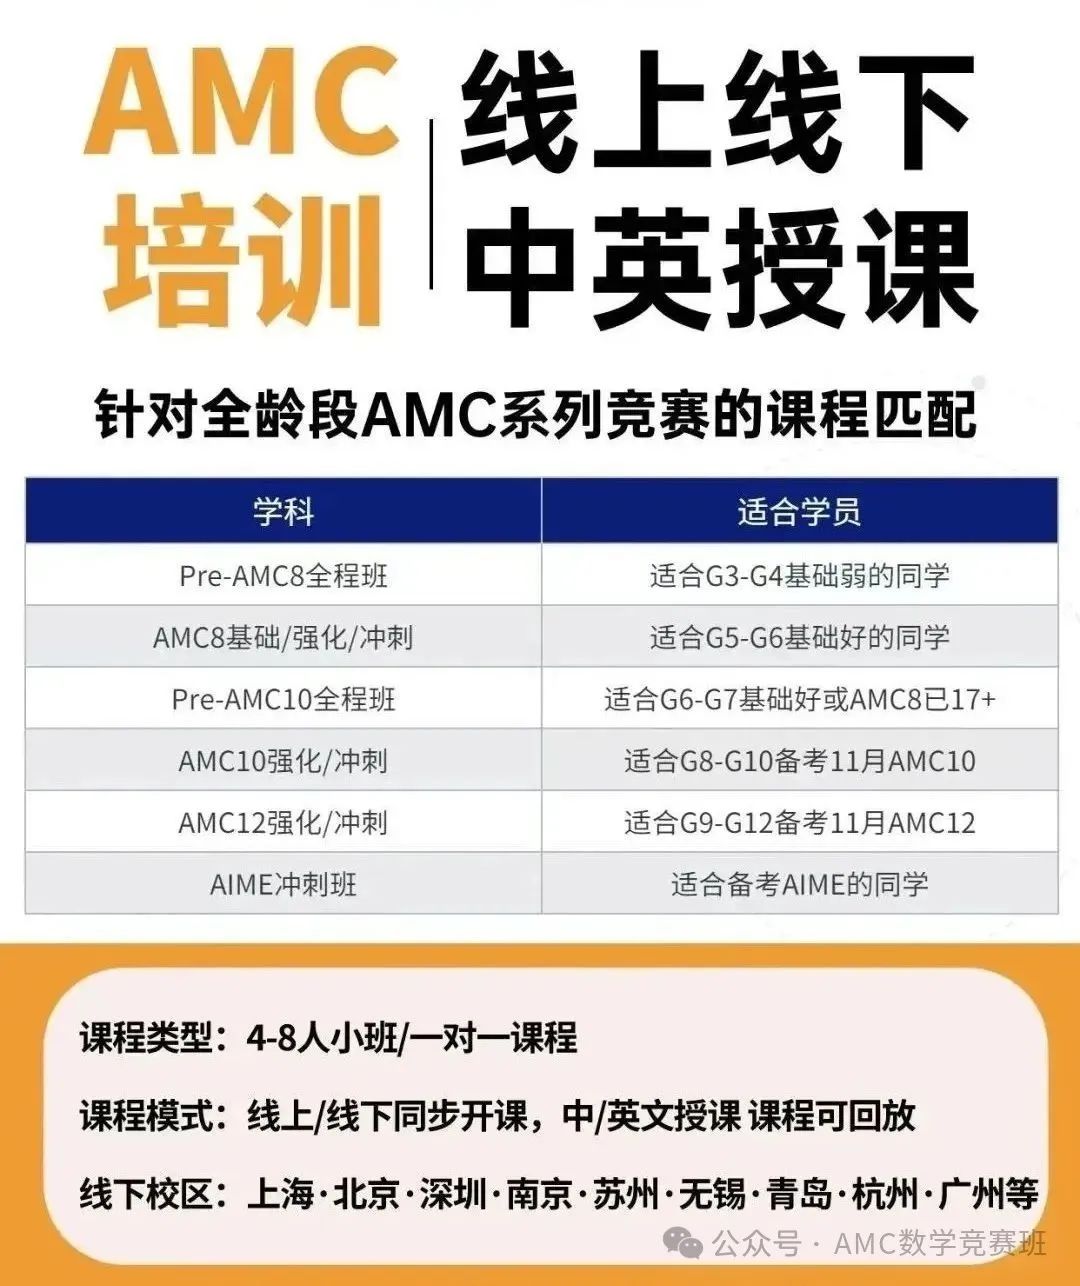 AMC8竞赛和希望杯相比哪个含金量更高？体制内学生如何备考AMC8数学竞赛？